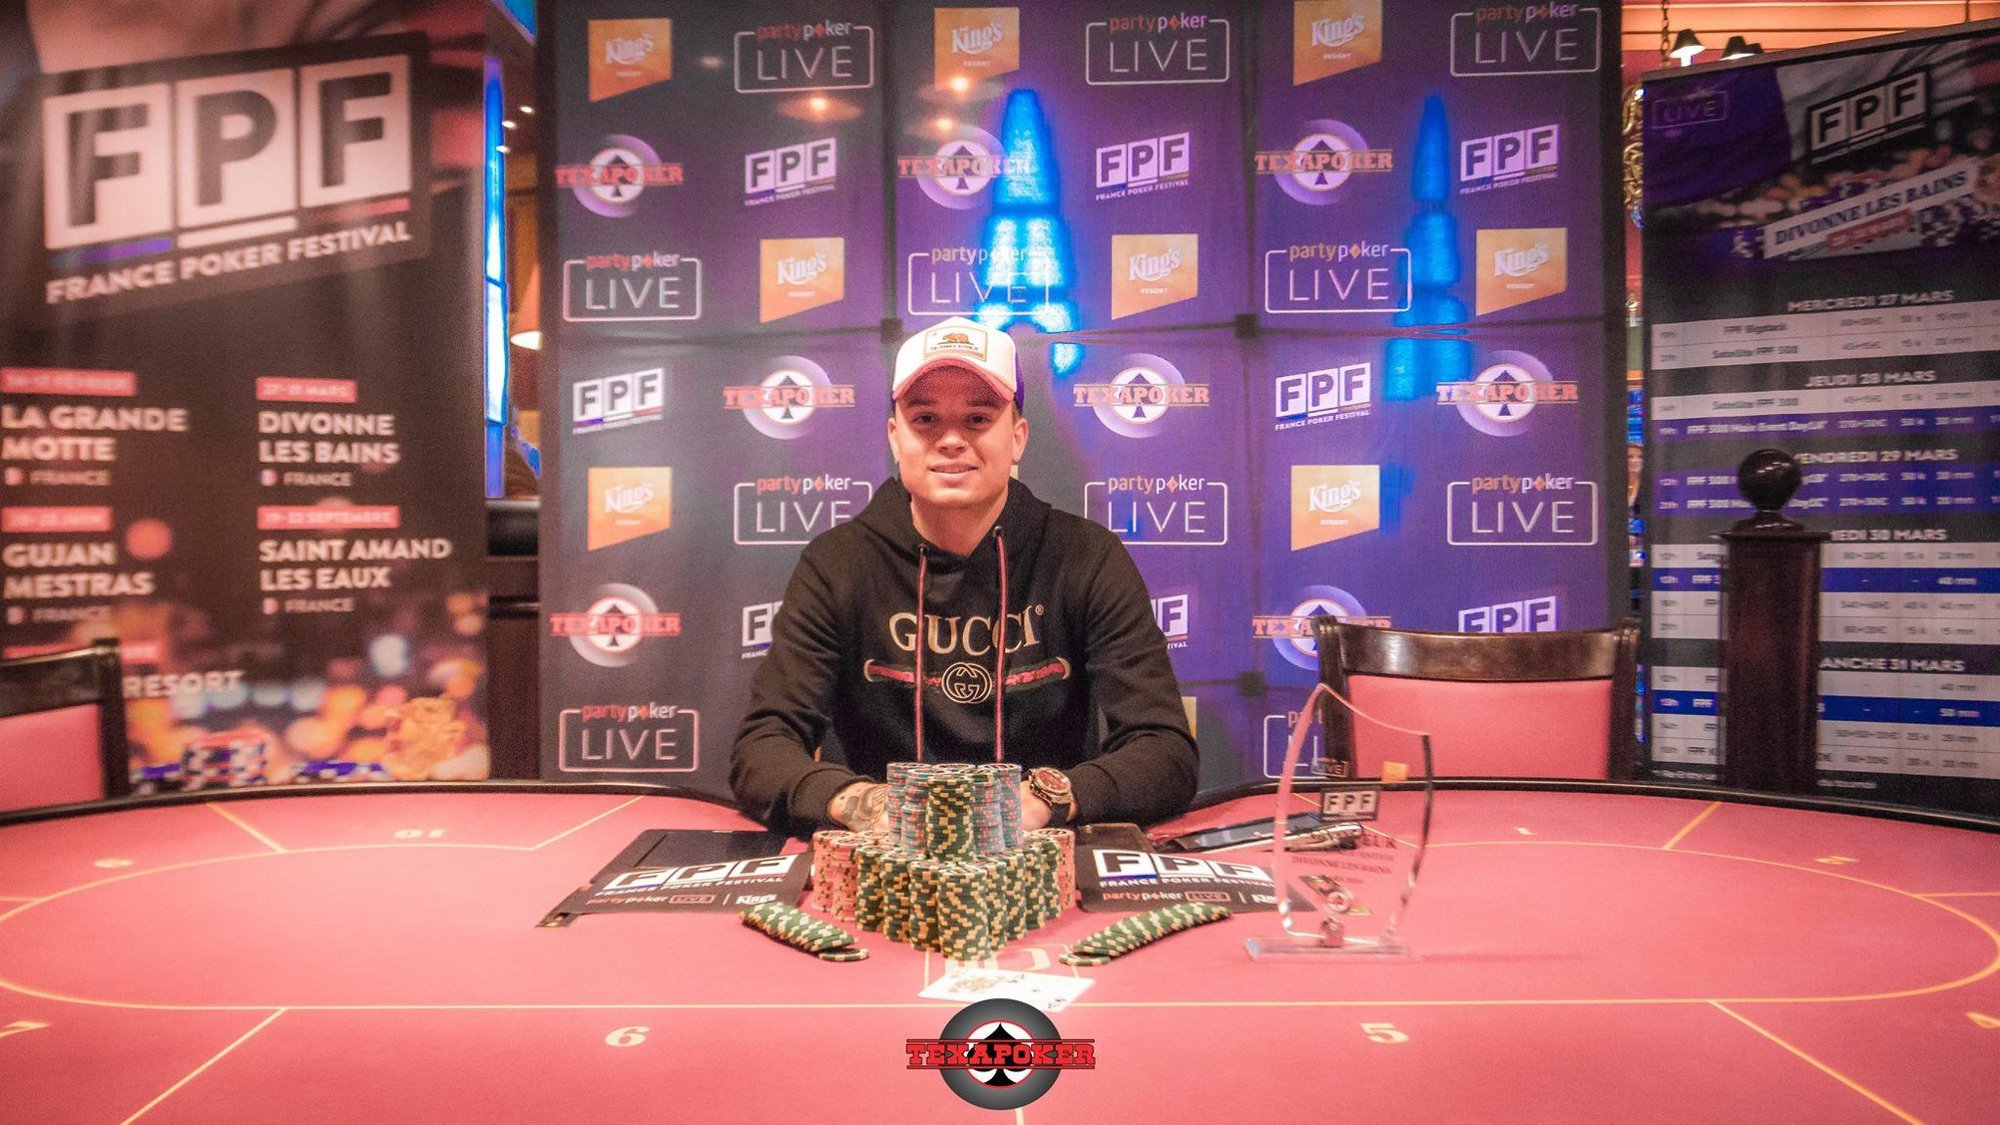 Le site du Casino de Divonne publie la photo d'Adryan, vainqueur du tournoi de poker.